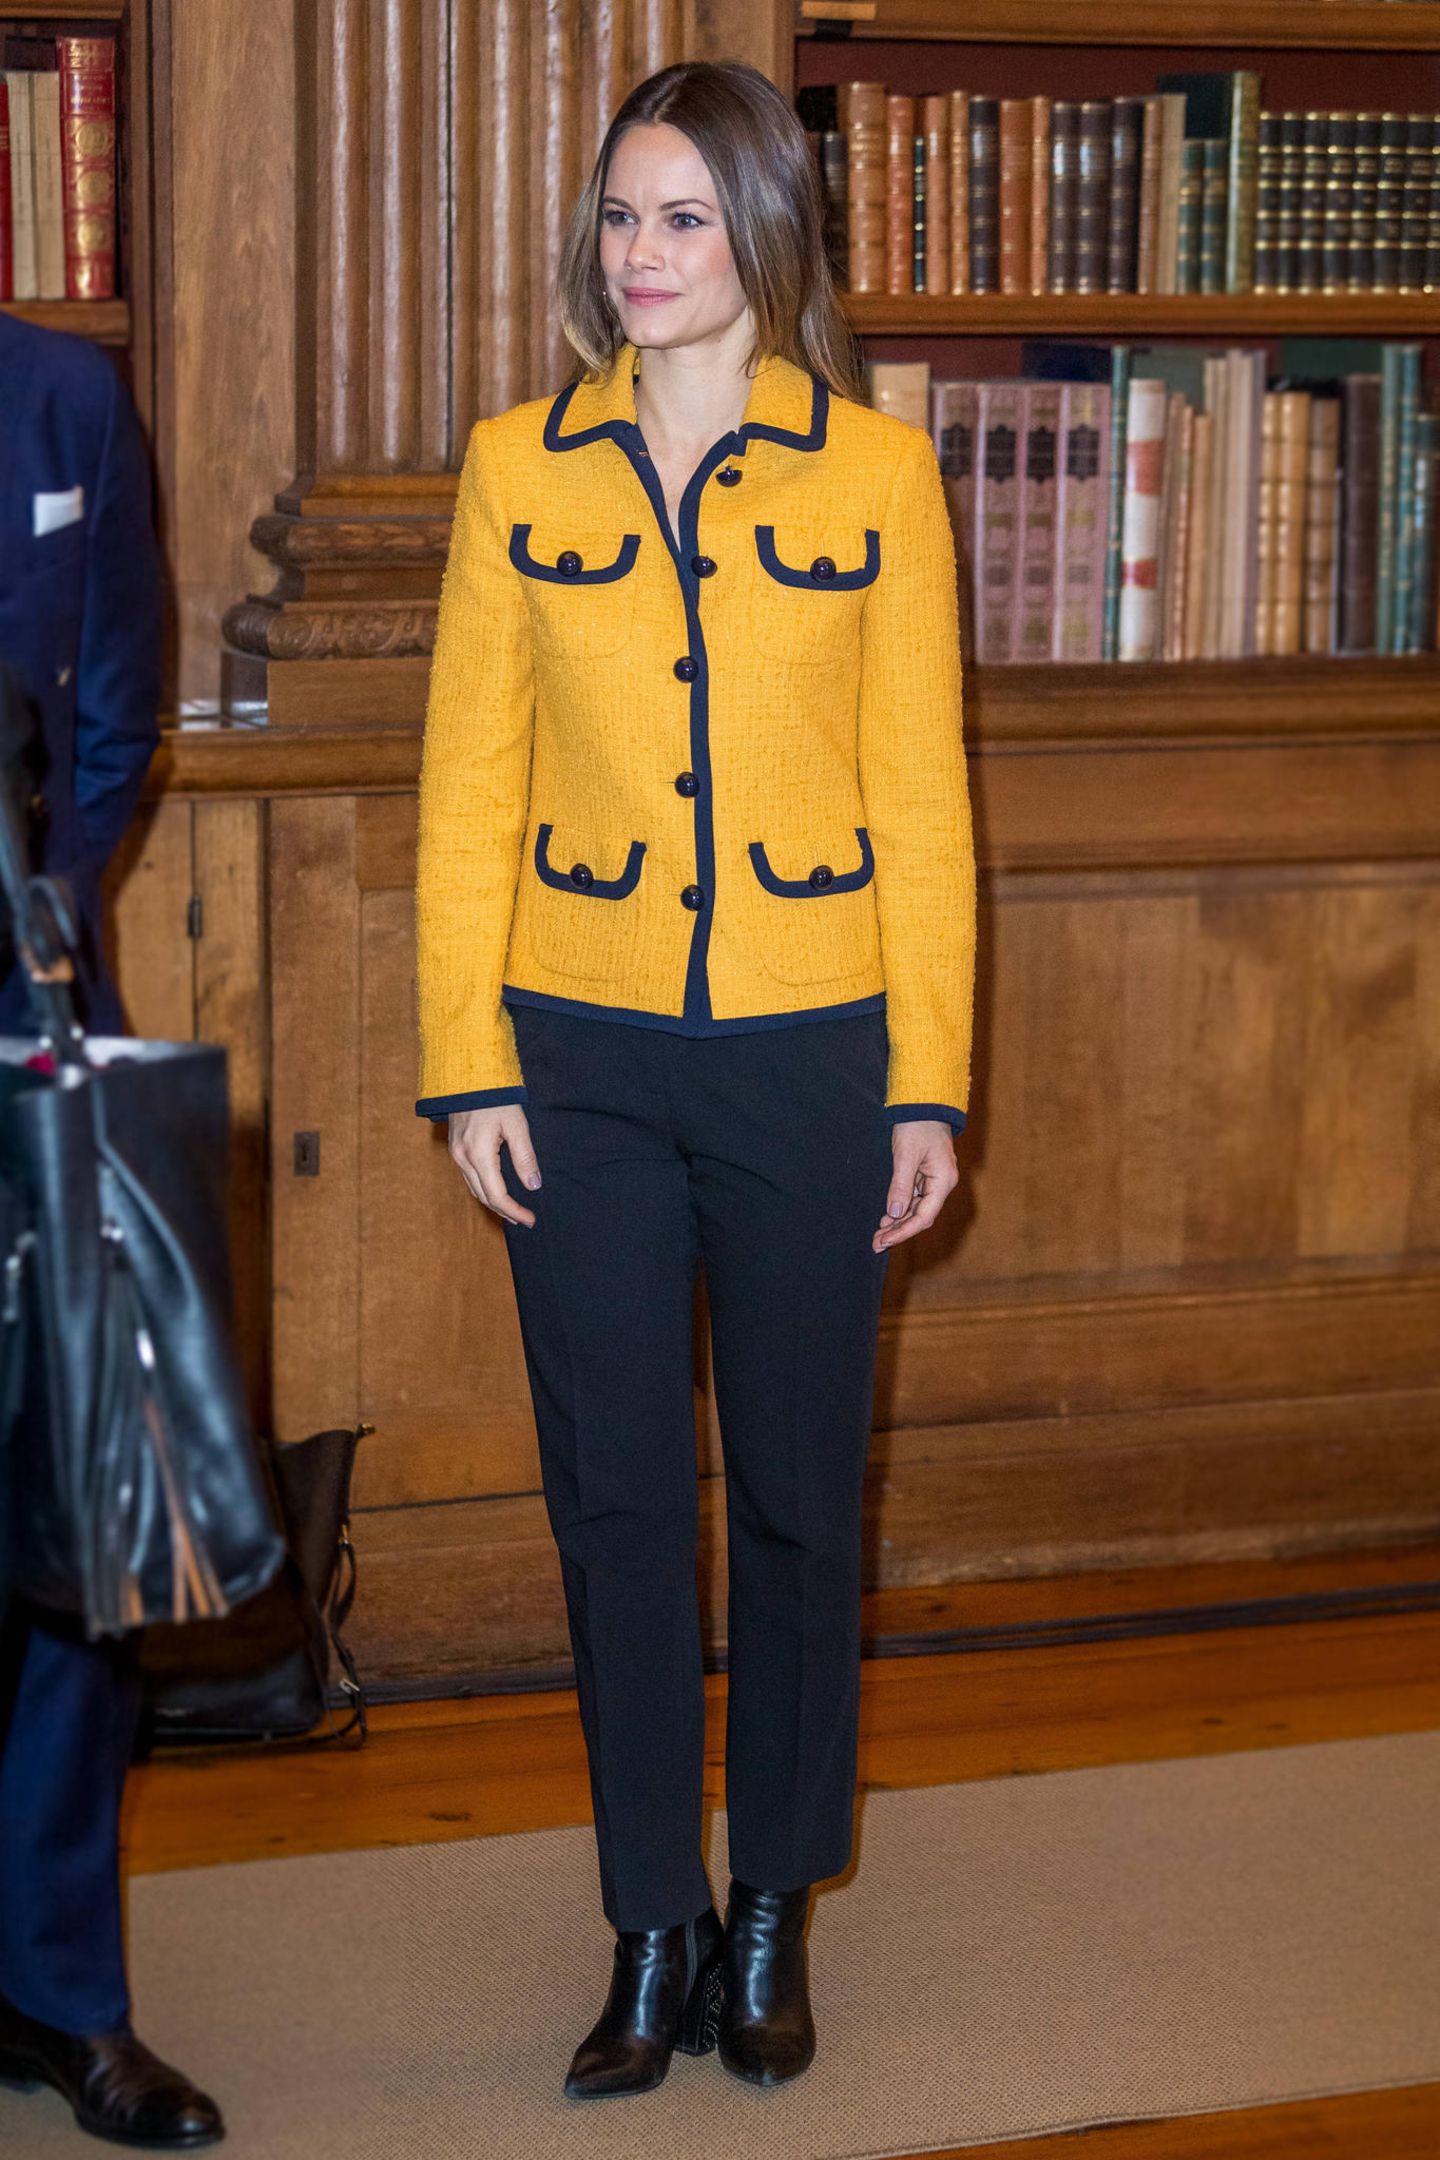 Bei einer Konferenz zu künstlicher Intelligenz zeigt sich Prinzessin Sofia von Schweden fast schon bieder: Zur kastigen gelben Jacke trägt sie eine gerade geschnittene schwarze Hose und schlichte schwarze Stiefeletten.